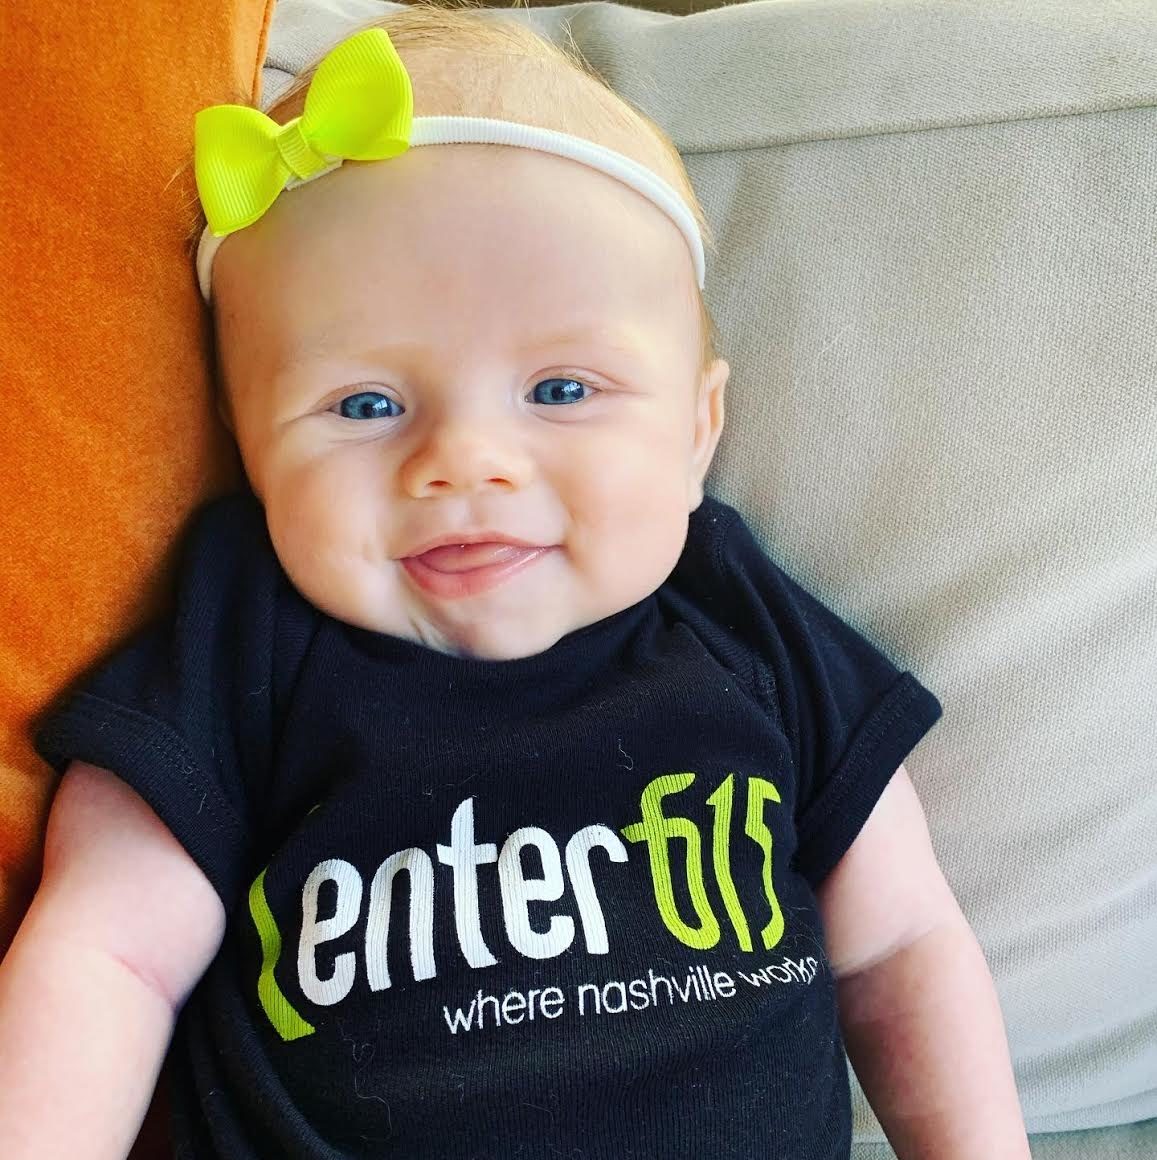 Baby wearing a Center 615 shirt.